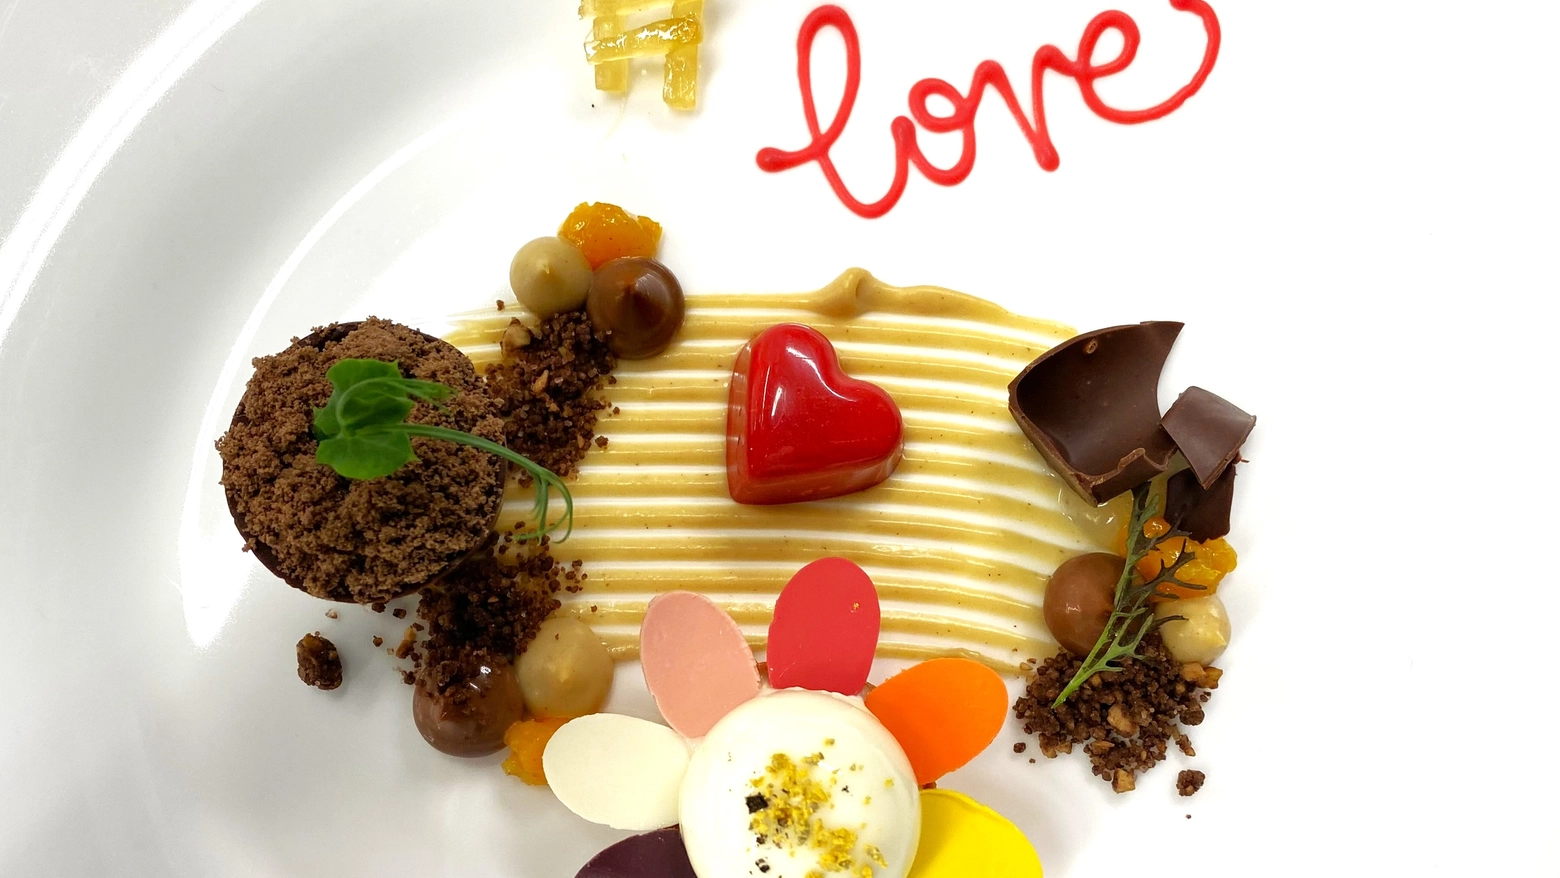 È dedicato all’amore universale il dolce realizzato a 6 mani da Filippo Sinisgalli con i giovani pastry chef Alice Vialetto e Marco Castronovi, al ristorante Zur Kaiserkron di Bolzano